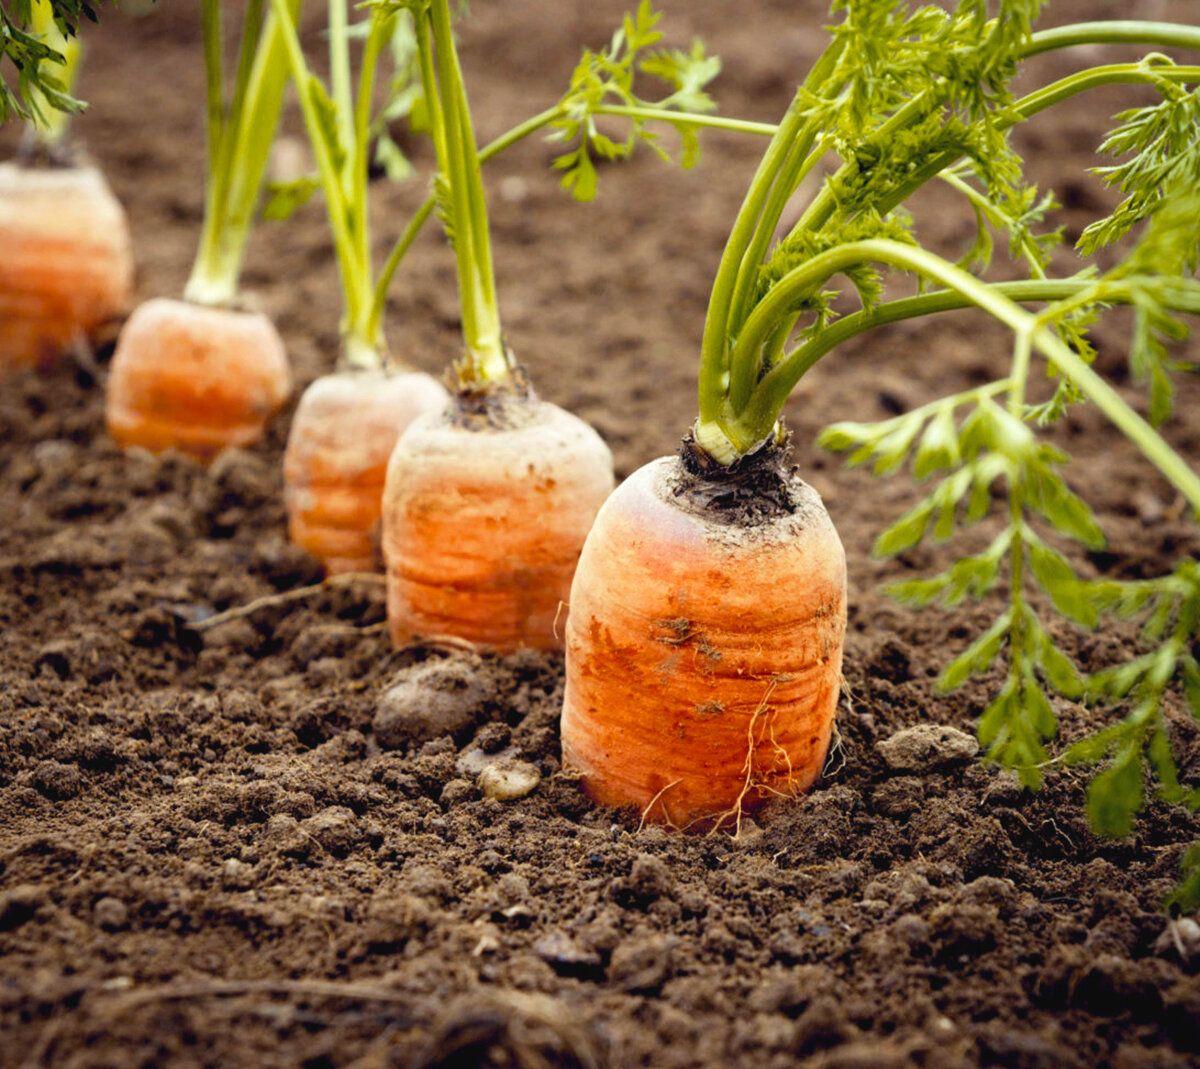 Правила ухода за морковью в открытом грунте, чтобы был хороший урожай